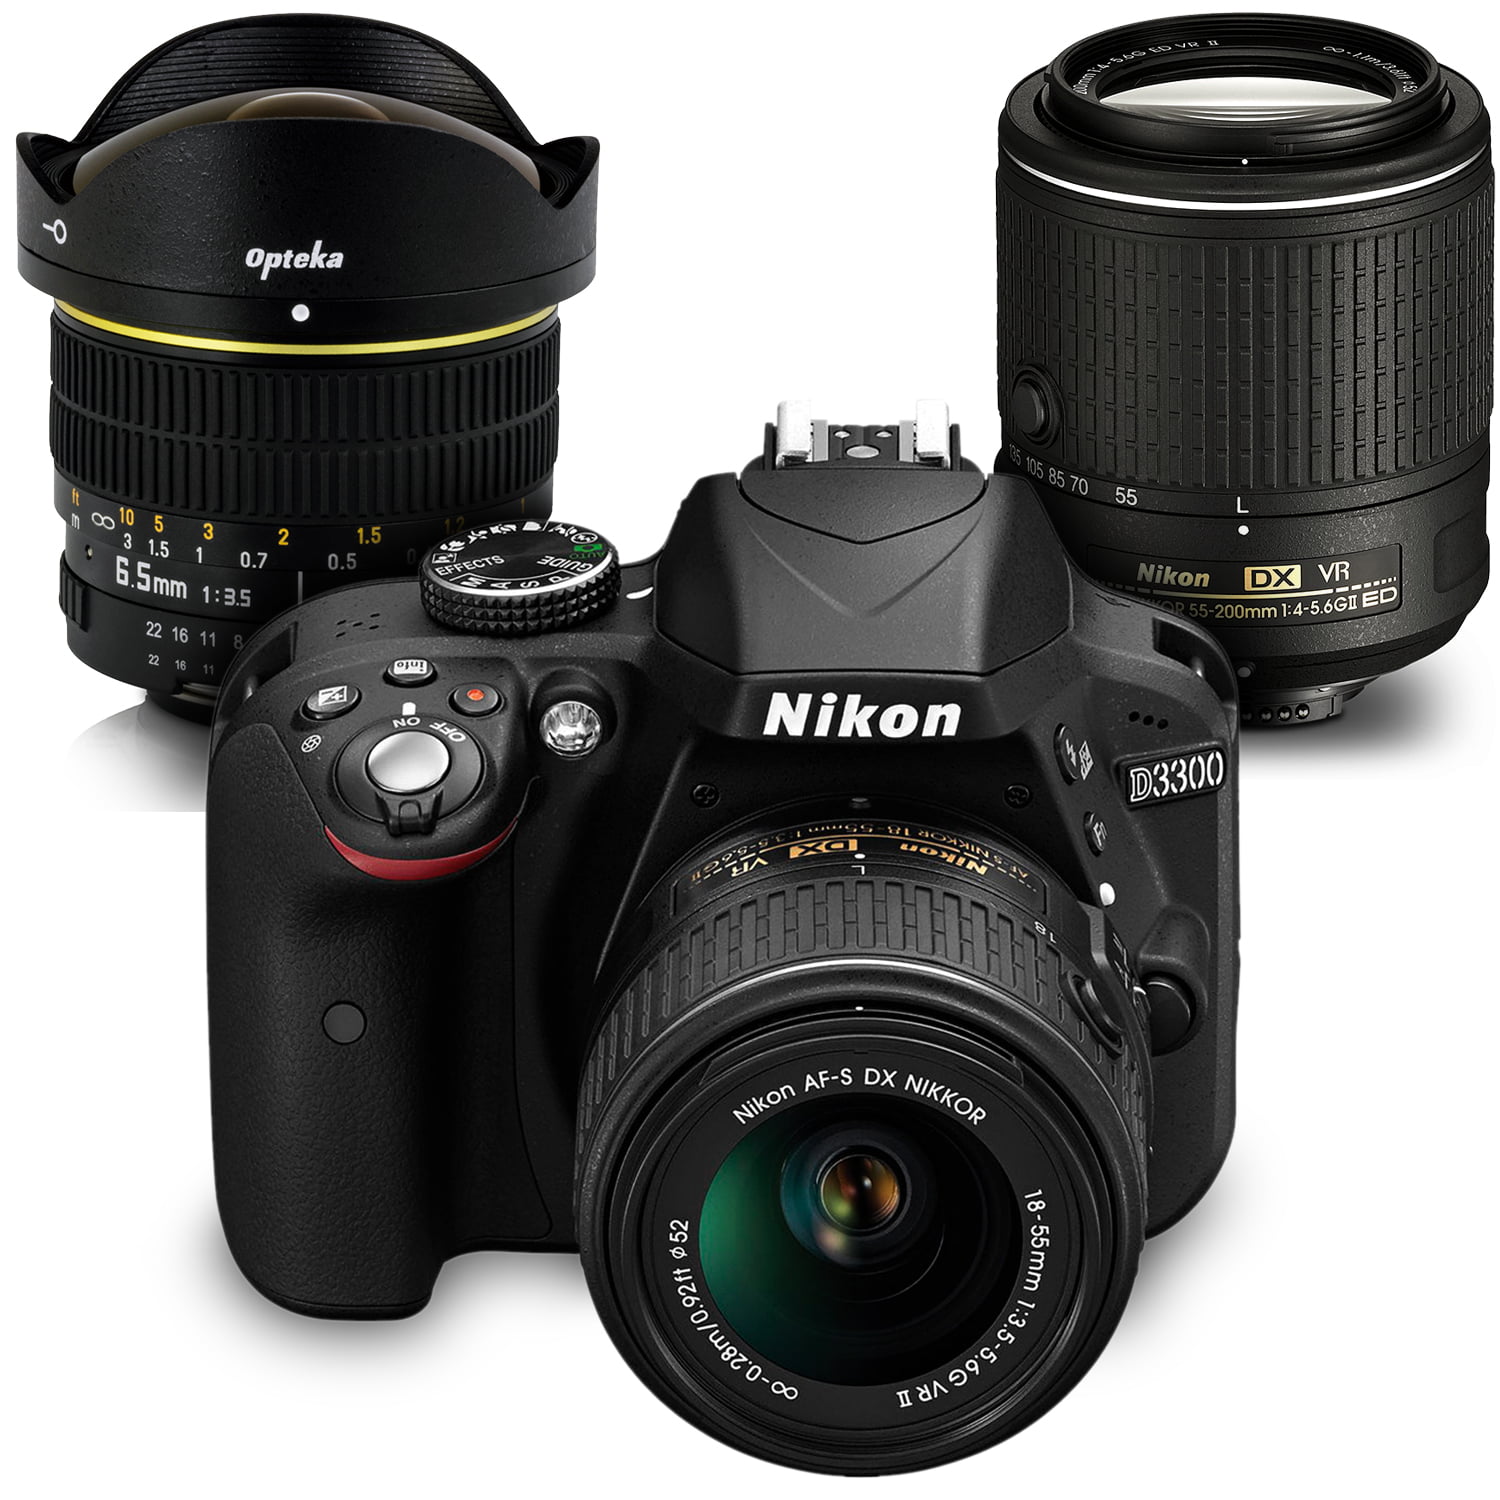 18 105 vr. Nikon d3300 Kit 18-55mm. Nikon d5300 Kit 18-105 VR.